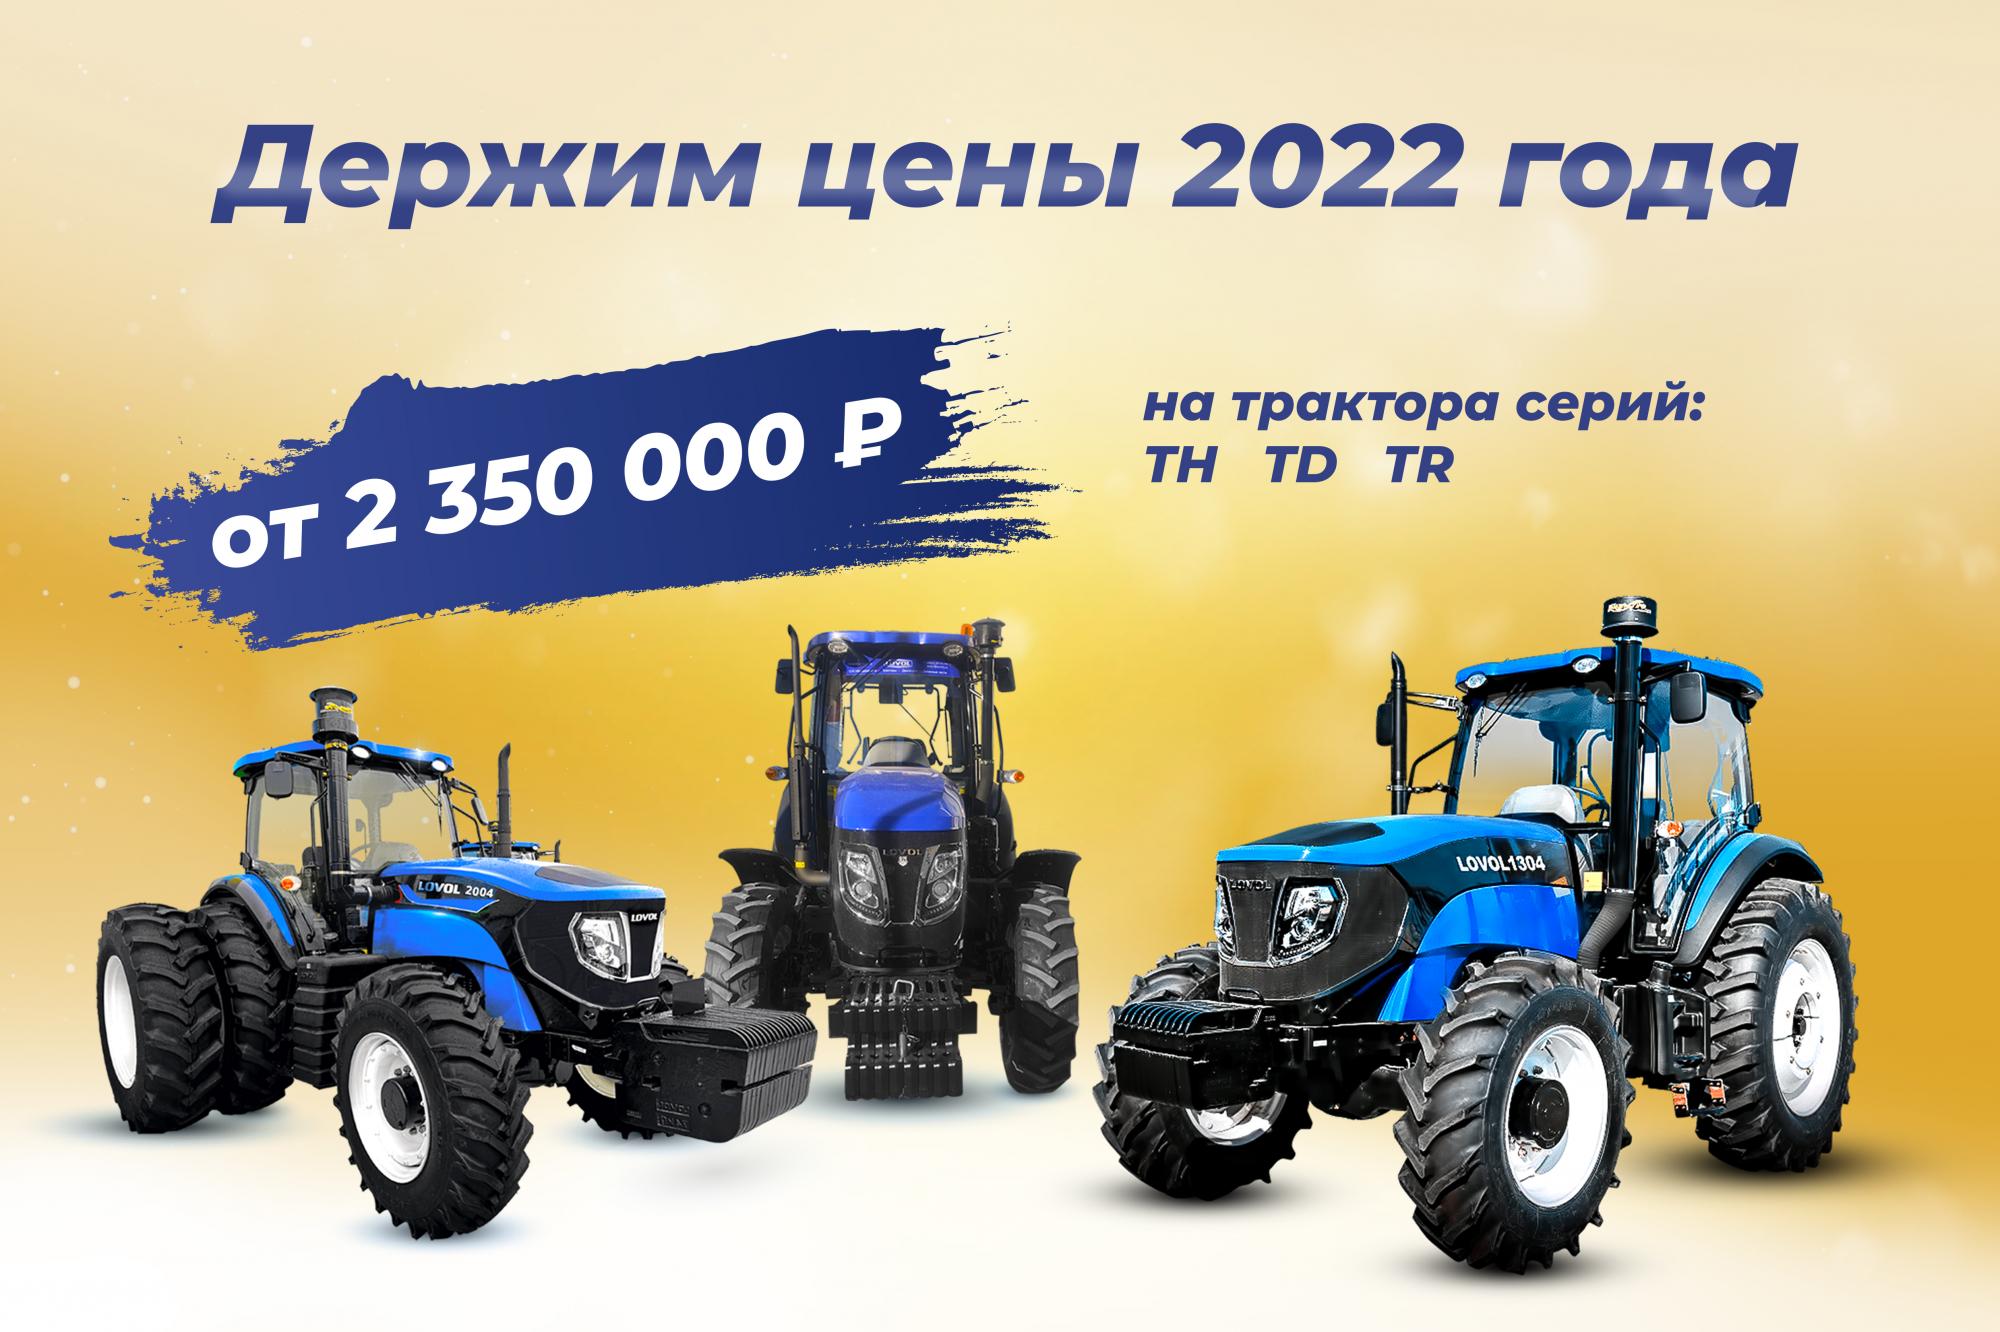 Трактора LOVOL серии TD, TH, TR по ценам 2022 года